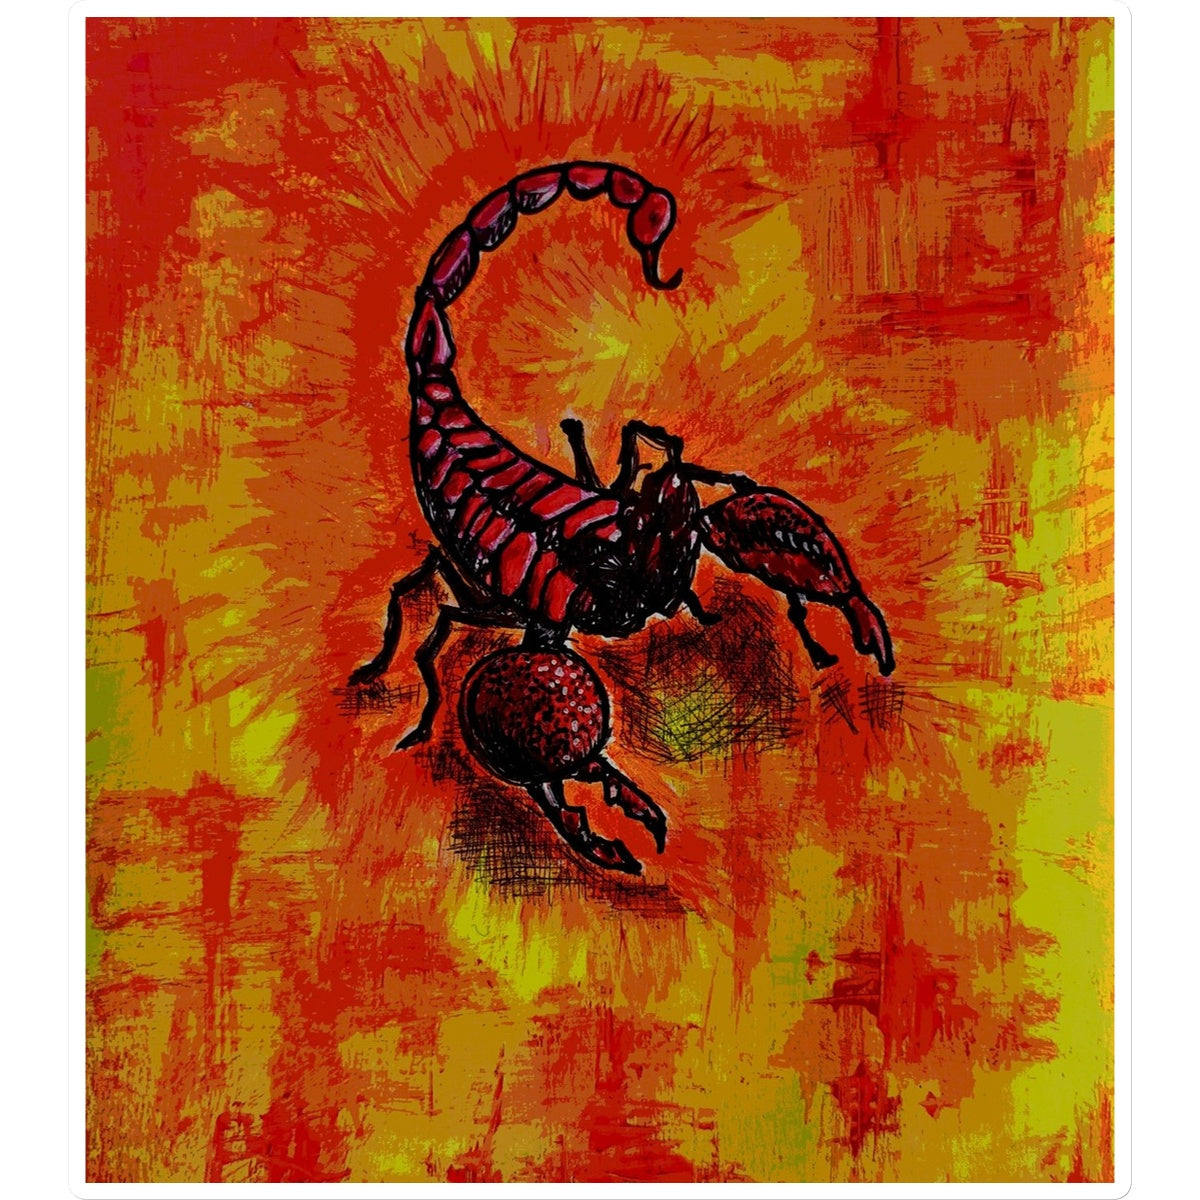 Scorpion Sticker